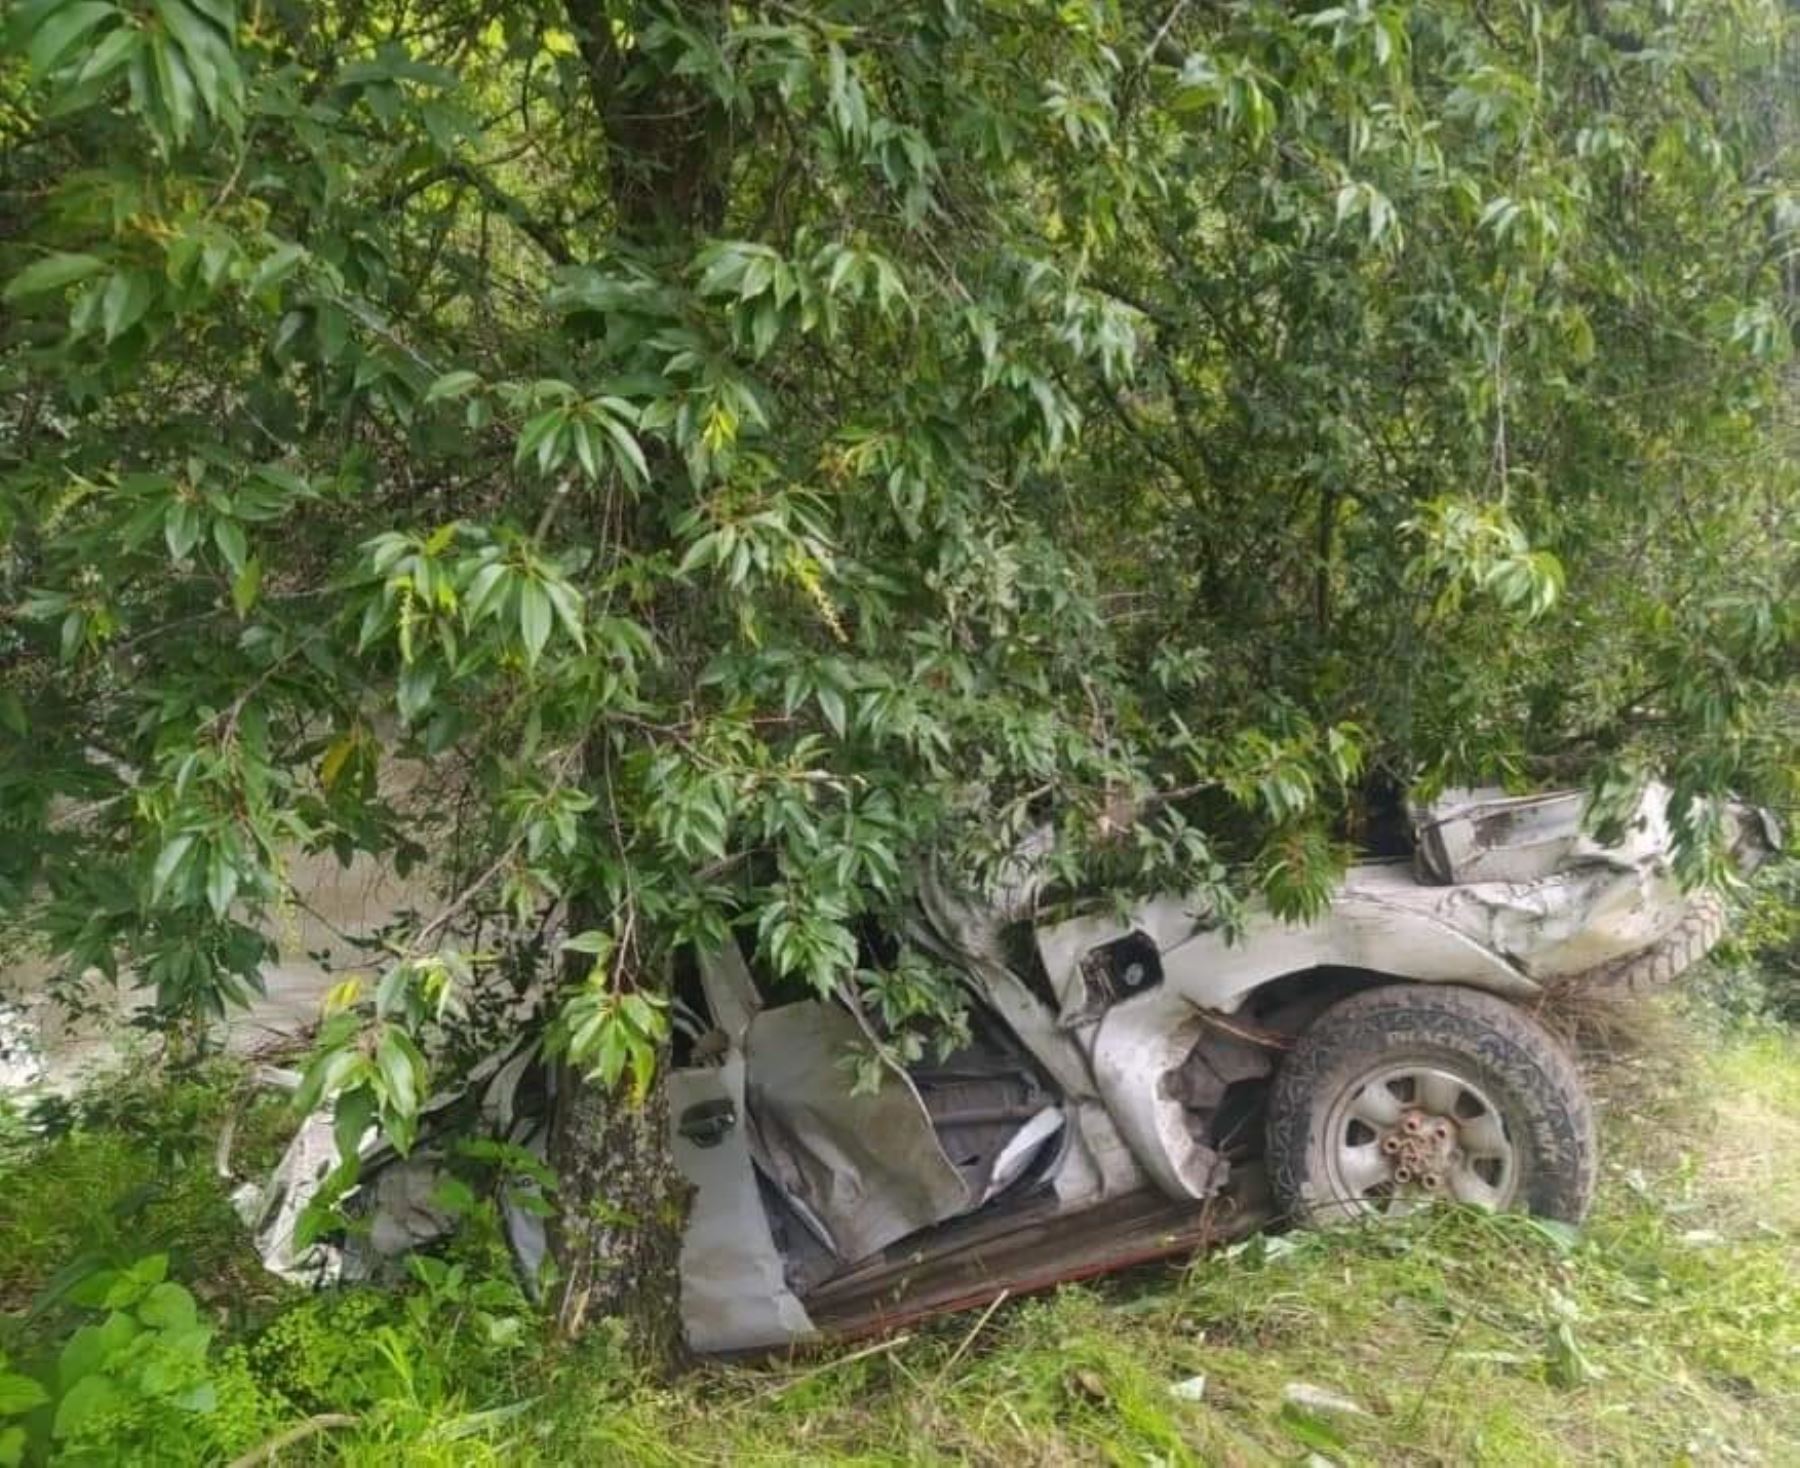 Las lluvias intensas y el exceso de velocidad habrían provocado el accidente de tránsito que cobró dos vidas en la provincia de La Mar, en Ayacucho.